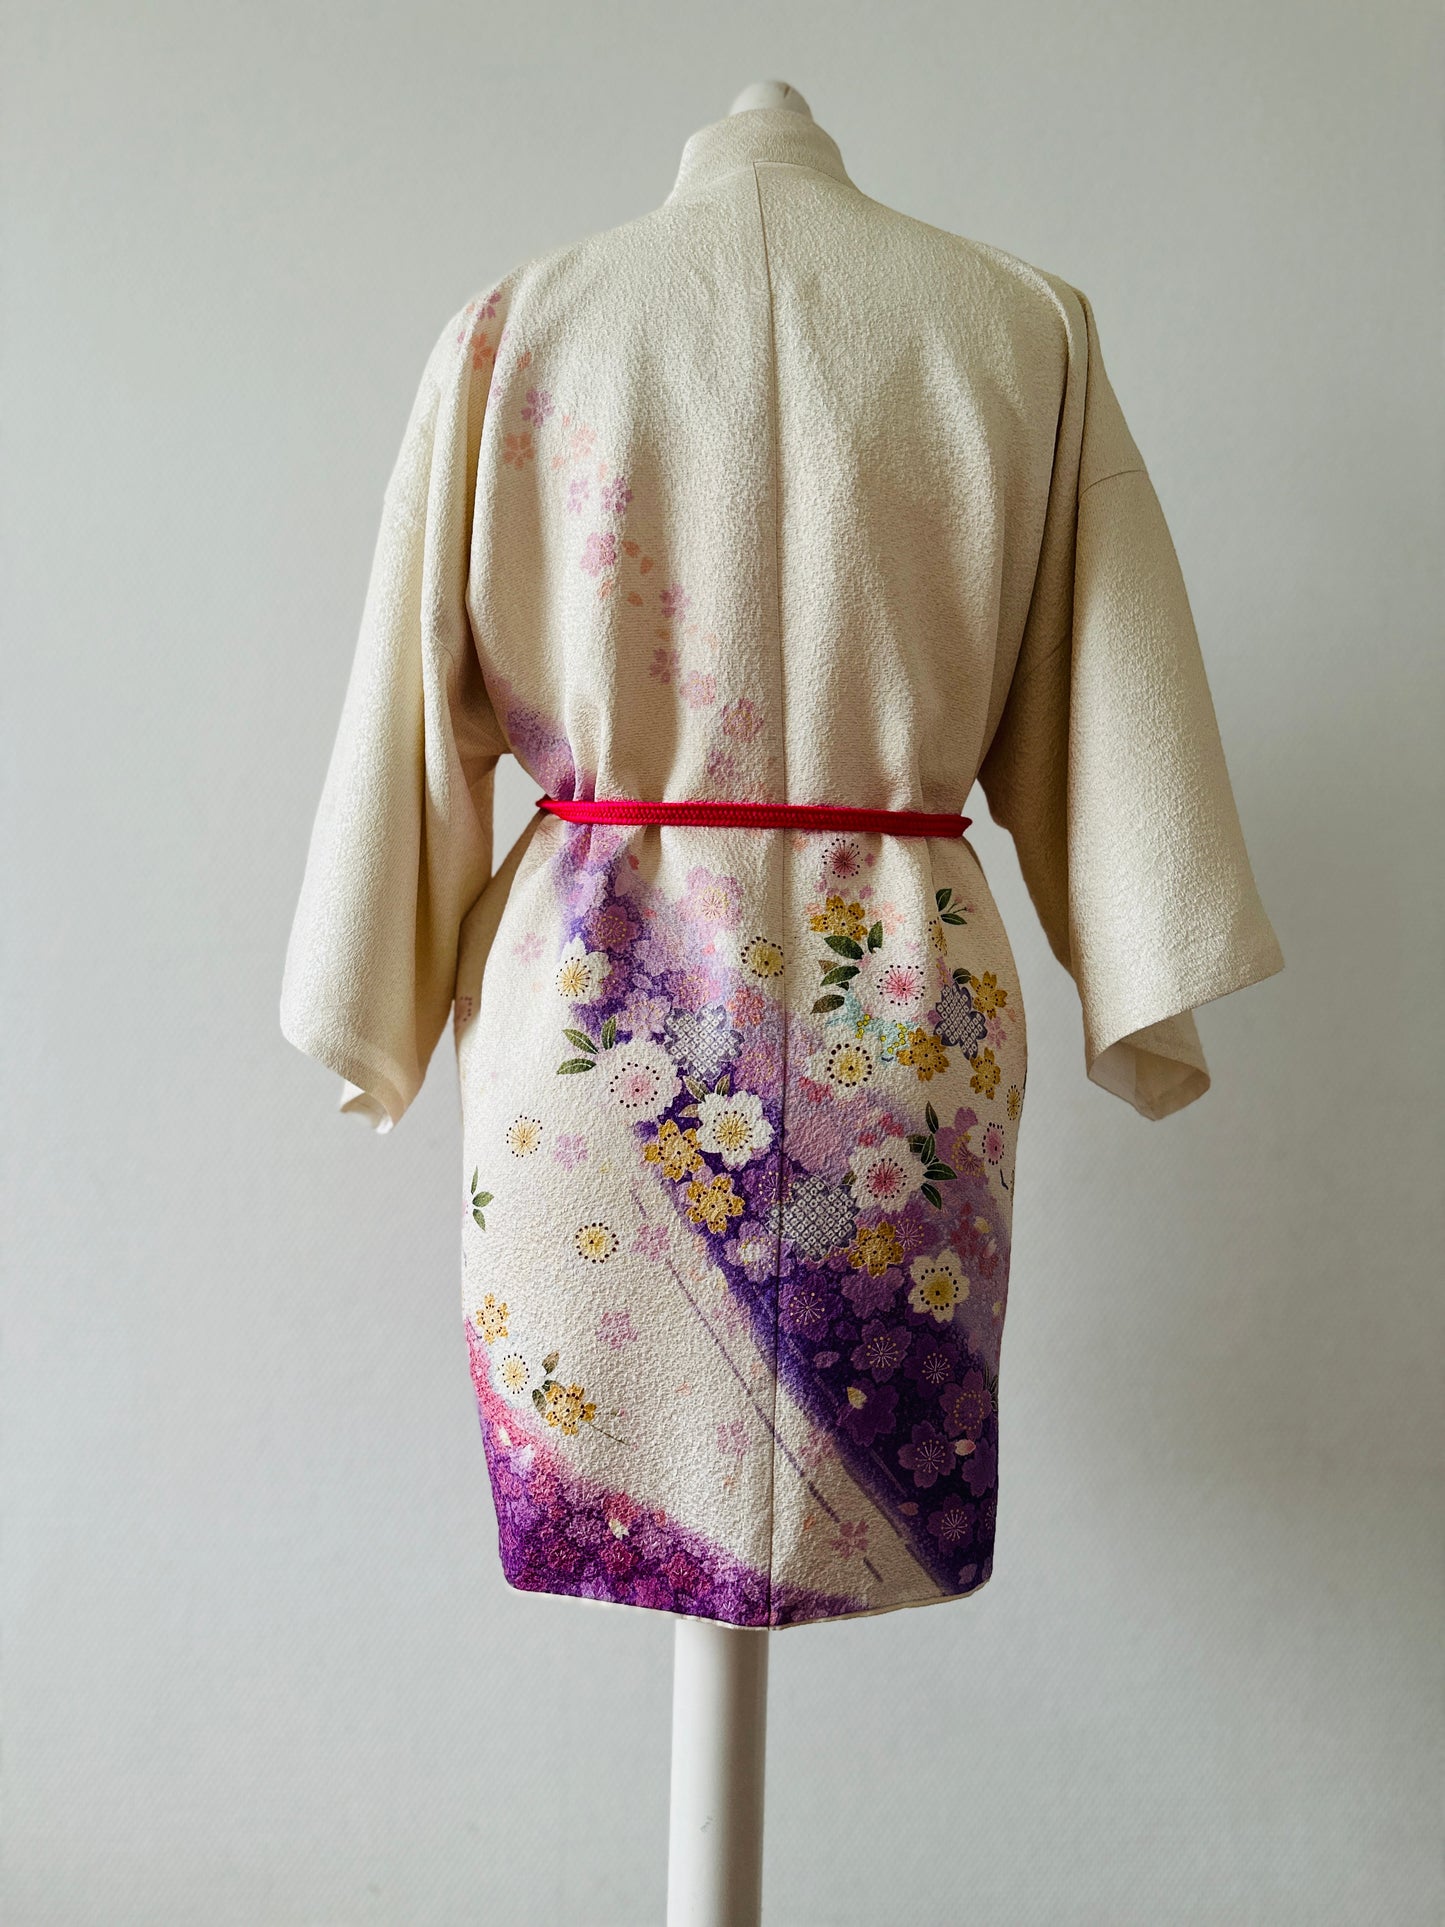 【Weiße, Kirschblüte】 Happi Jacke ＜ Ausgezeichnet ・ Seide ＞ Für Männer, für Frauen, japanische Kimono, Japan Unisexesische Kleidung, Unisex, japanische Geschenke, Originaldesigns